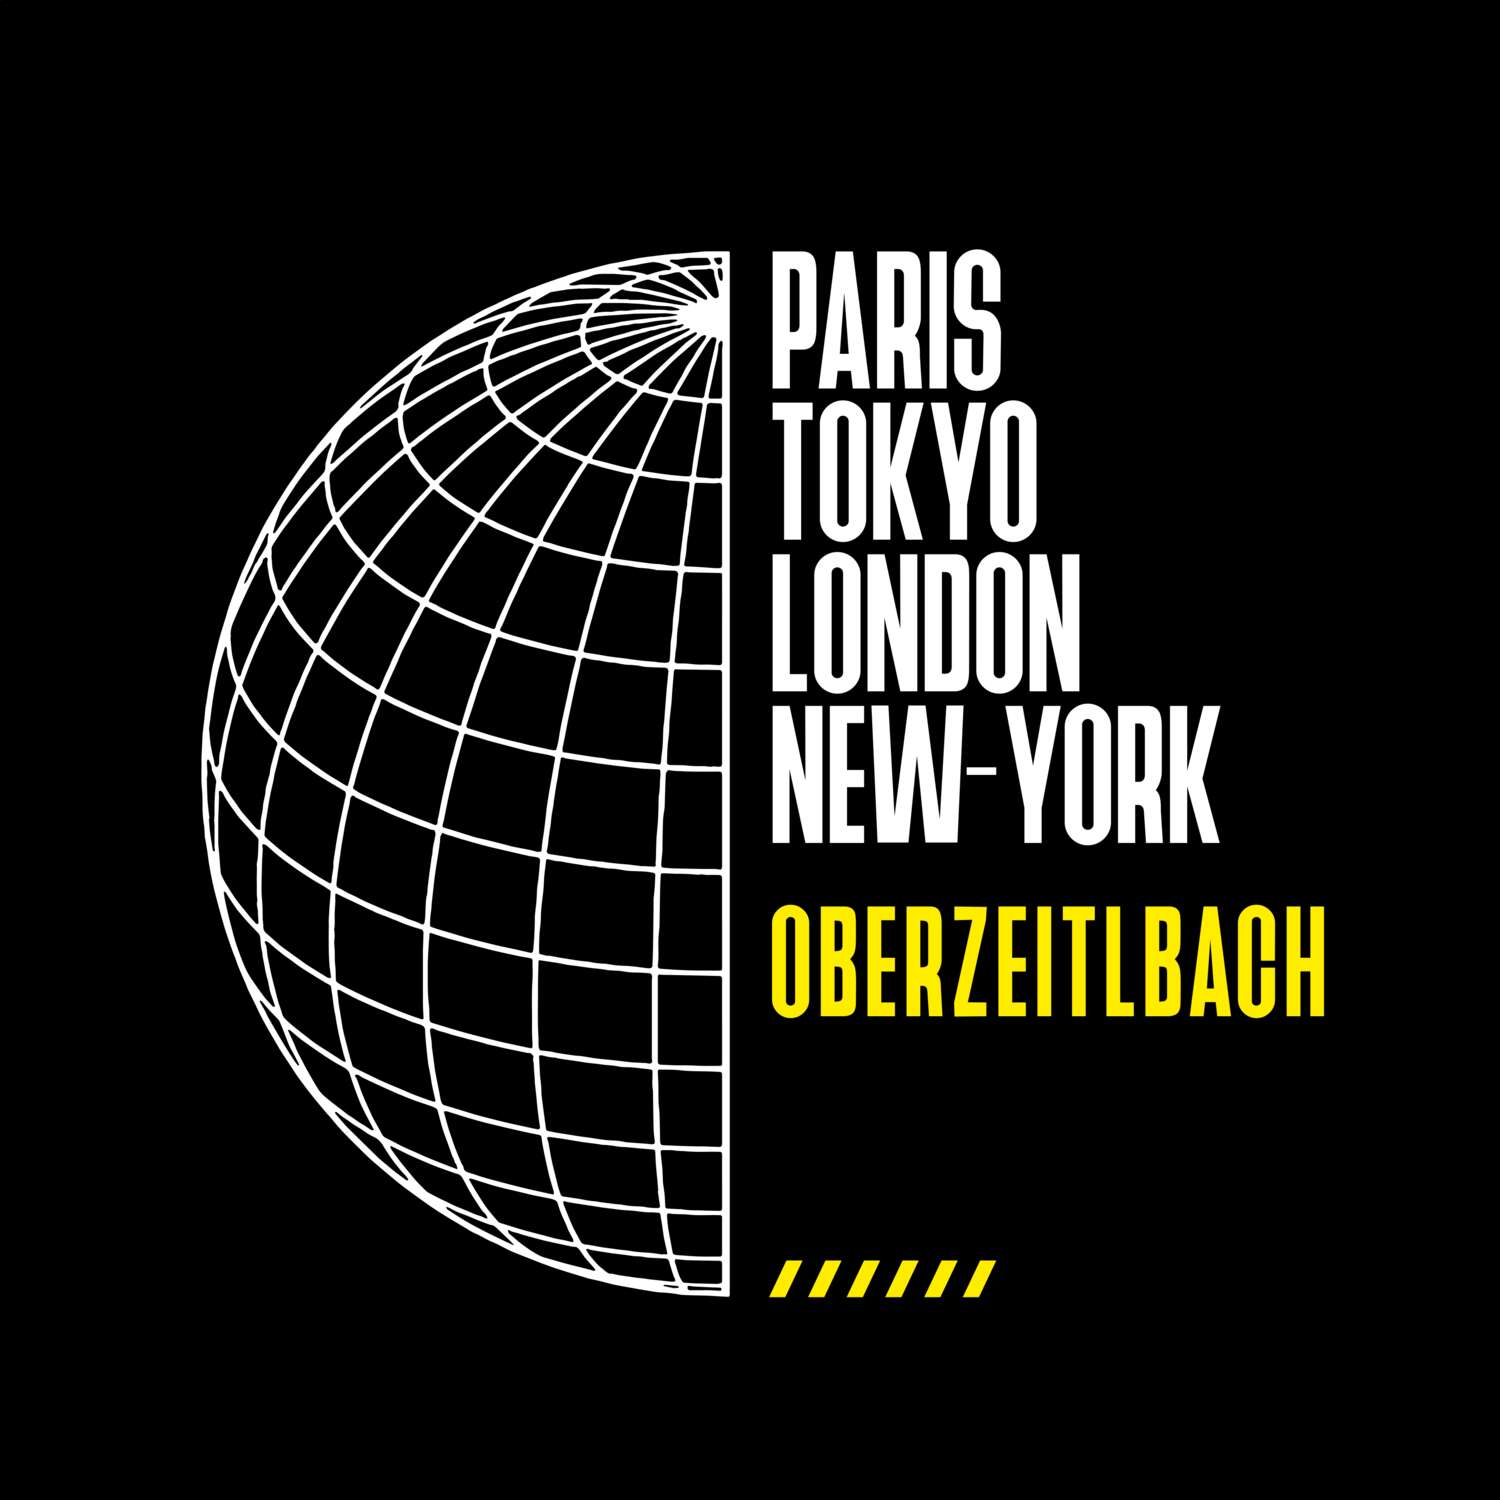 Oberzeitlbach T-Shirt »Paris Tokyo London«